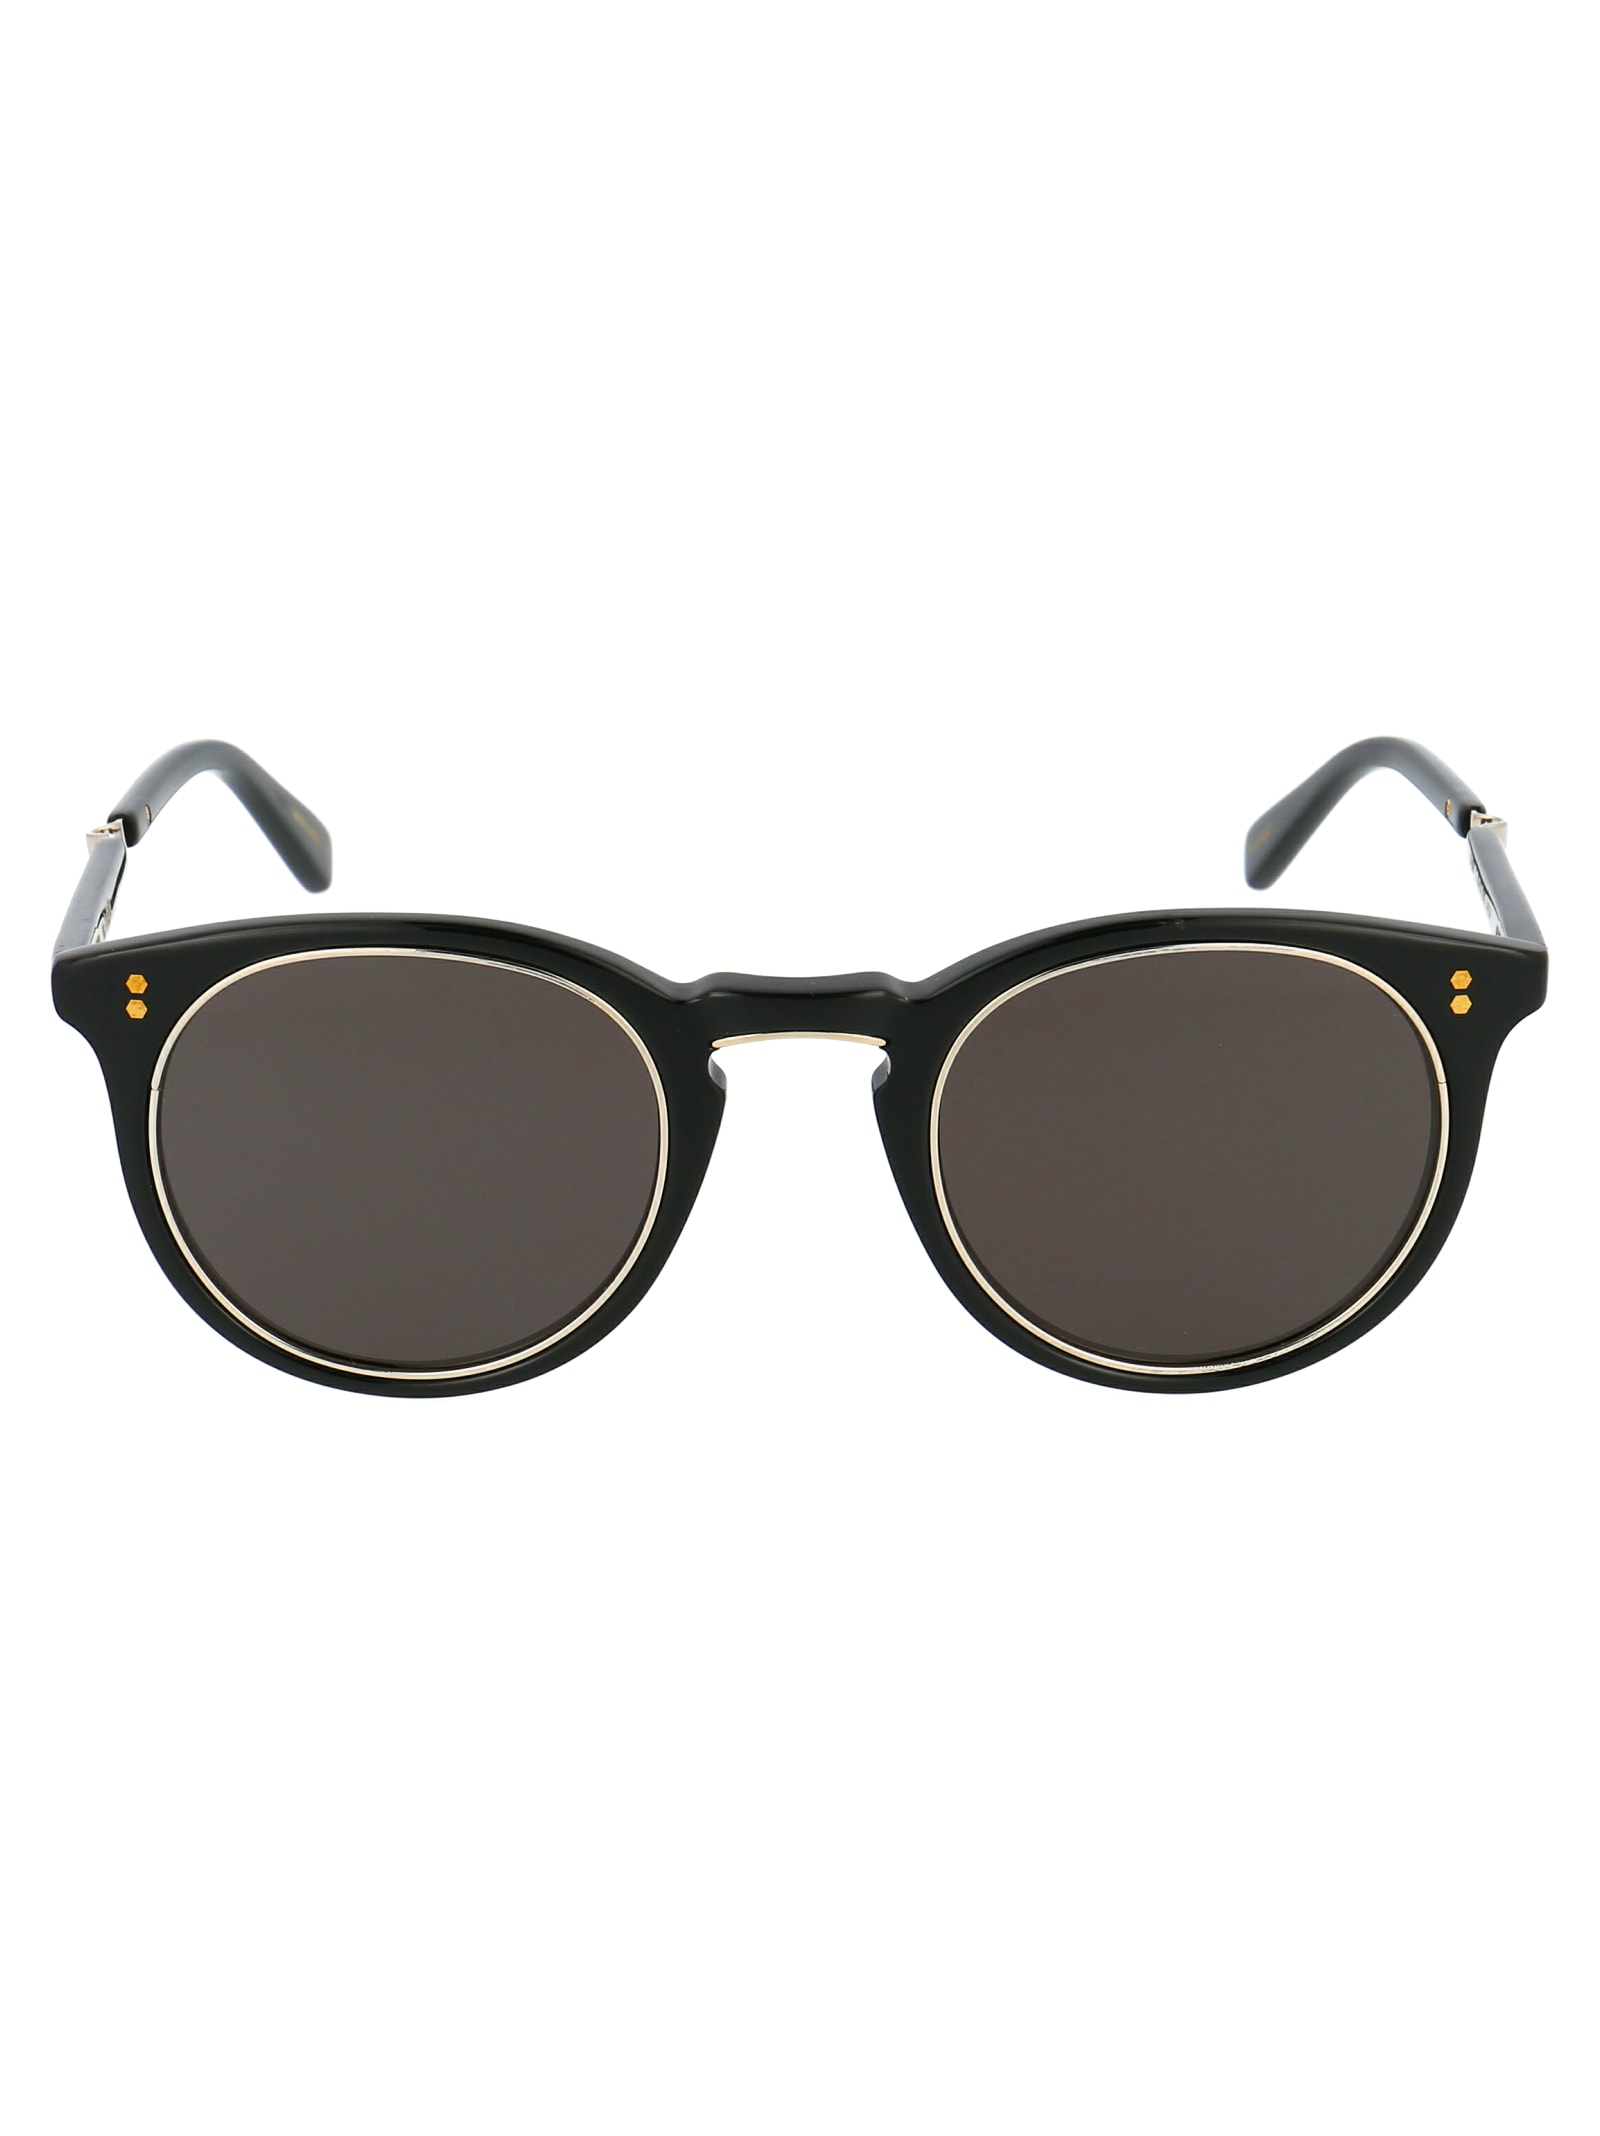 Garrett Leight Crosby S 44 Sunglasses